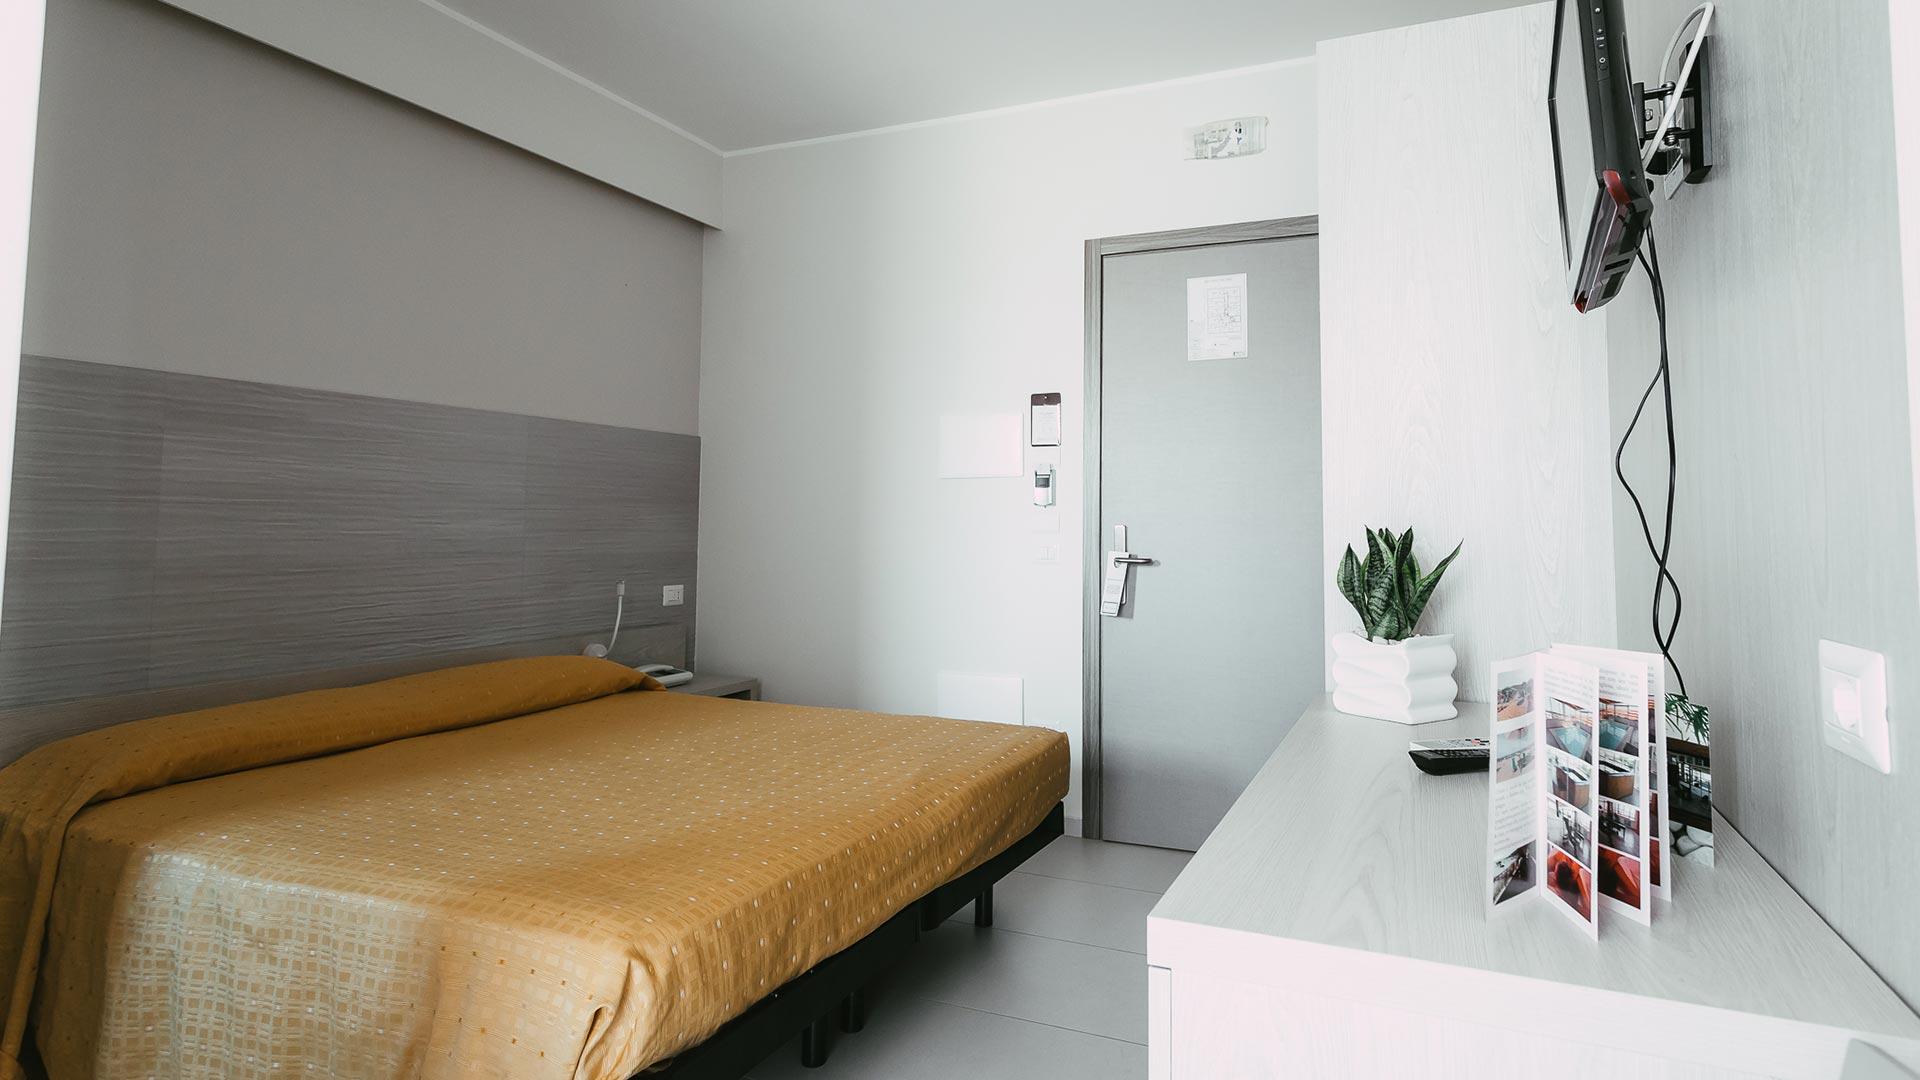 Camera d'albergo semplice con letto matrimoniale, TV e pianta decorativa.